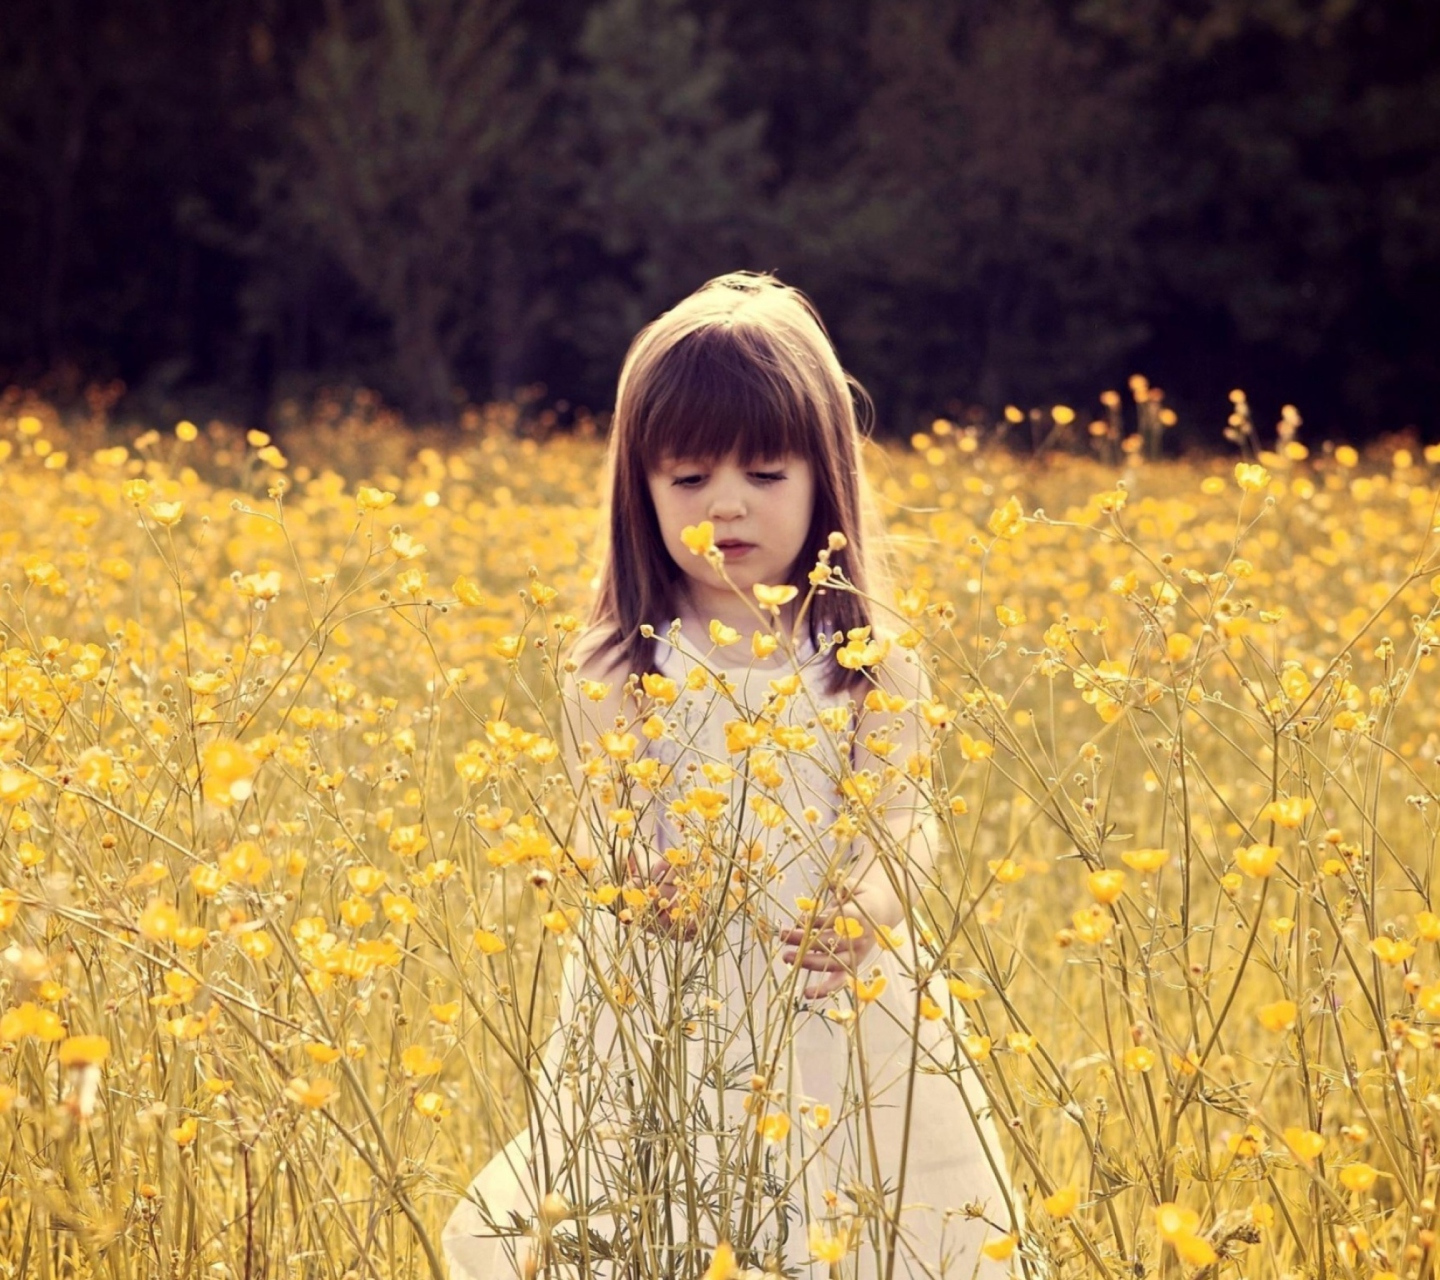 Das Cute Little Girl In Flower Field Wallpaper 1440x1280